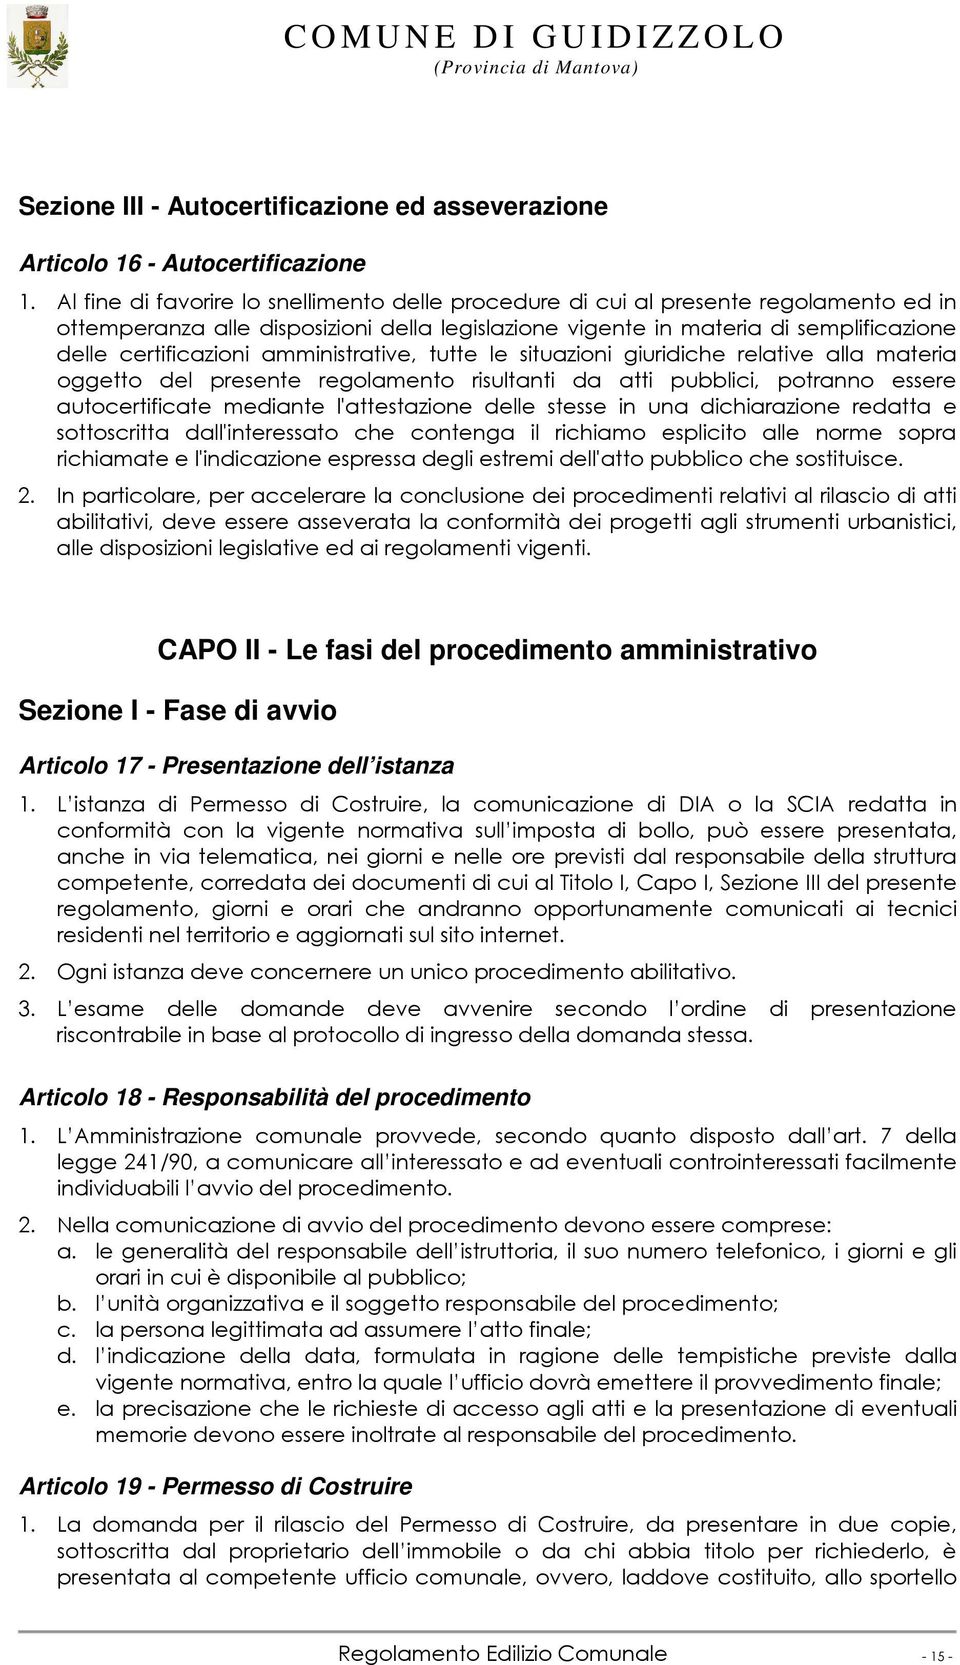 CAPO II - Le fasi del procedimento amministrativo Sezione I - Fase di avvio Articolo 17 - Presentazione